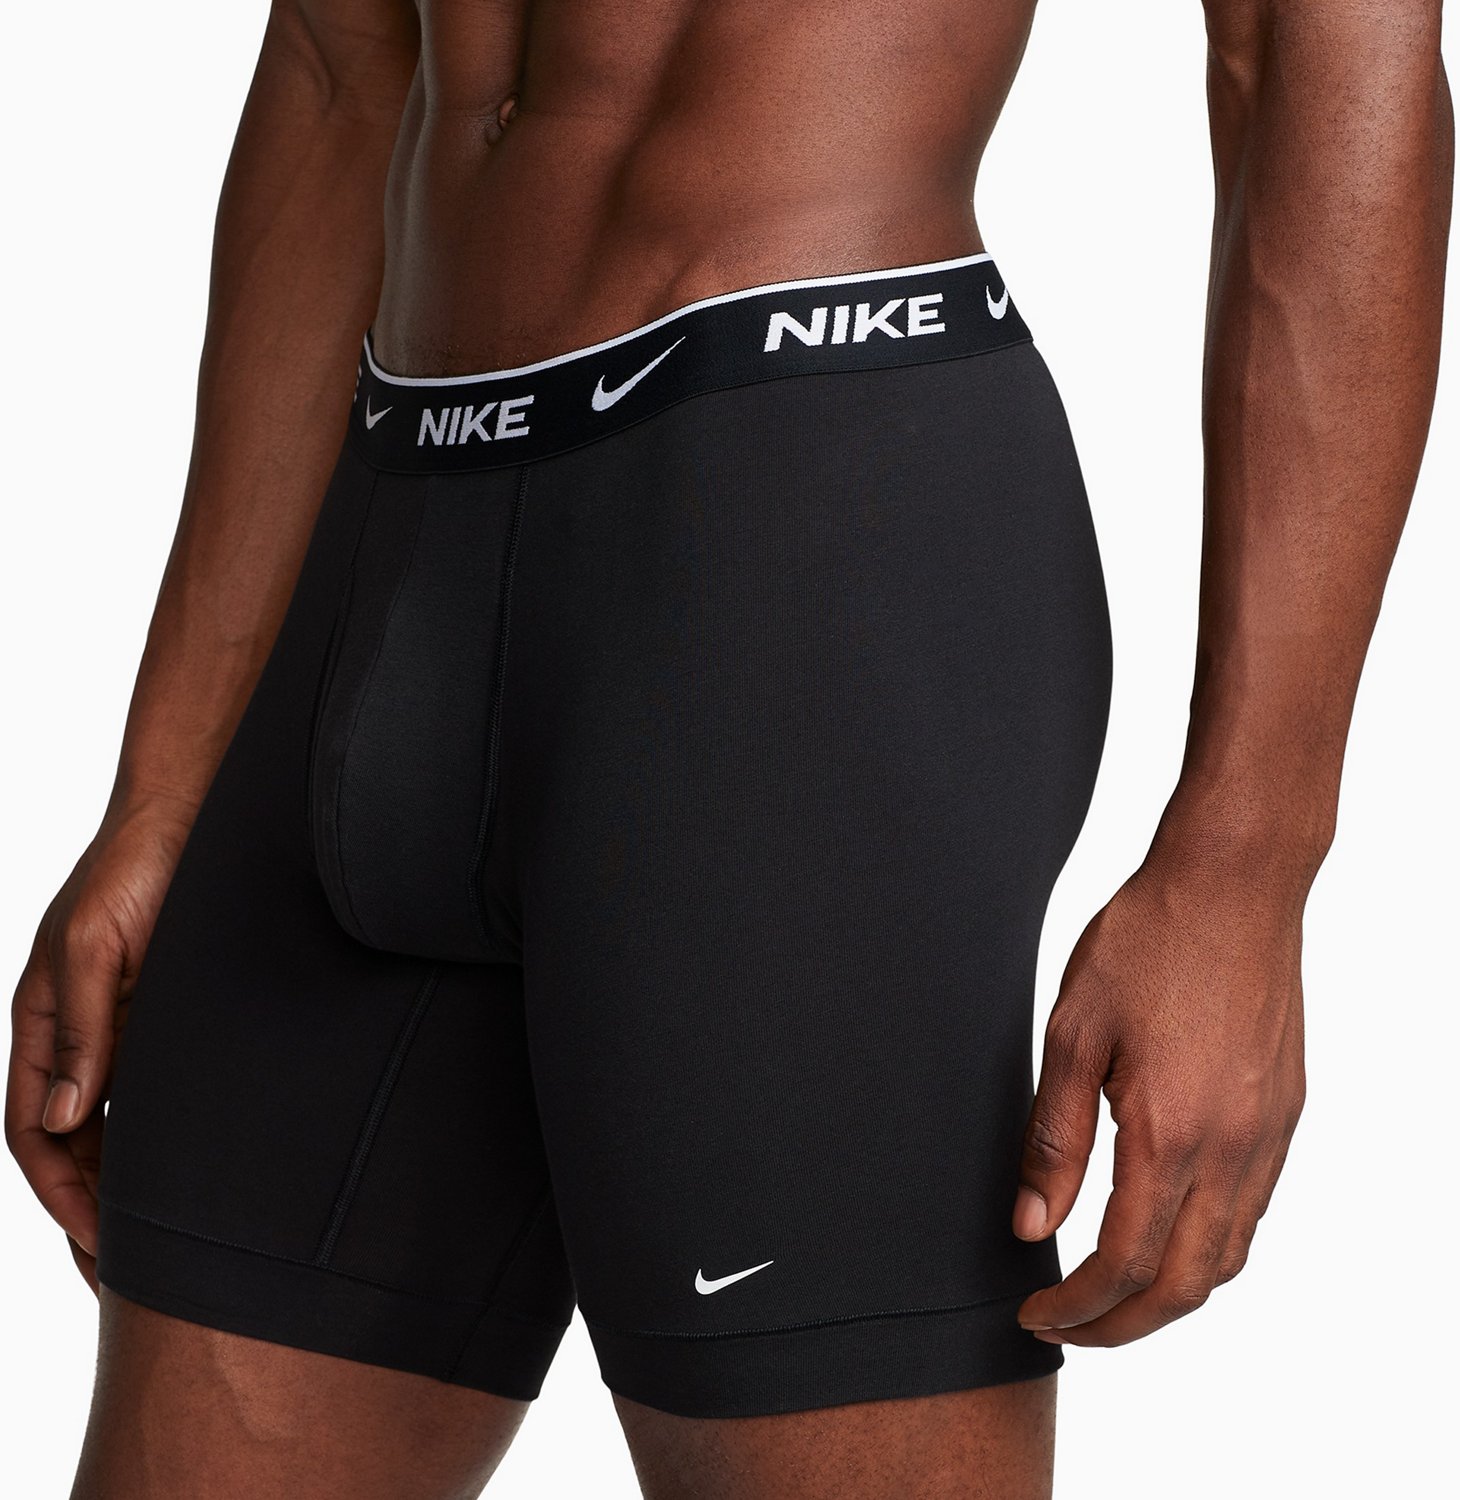 Luidspreker schokkend Hesje Nike Men's Essential Cotton Stretch Long Boxer Briefs 3-Pack | Academy